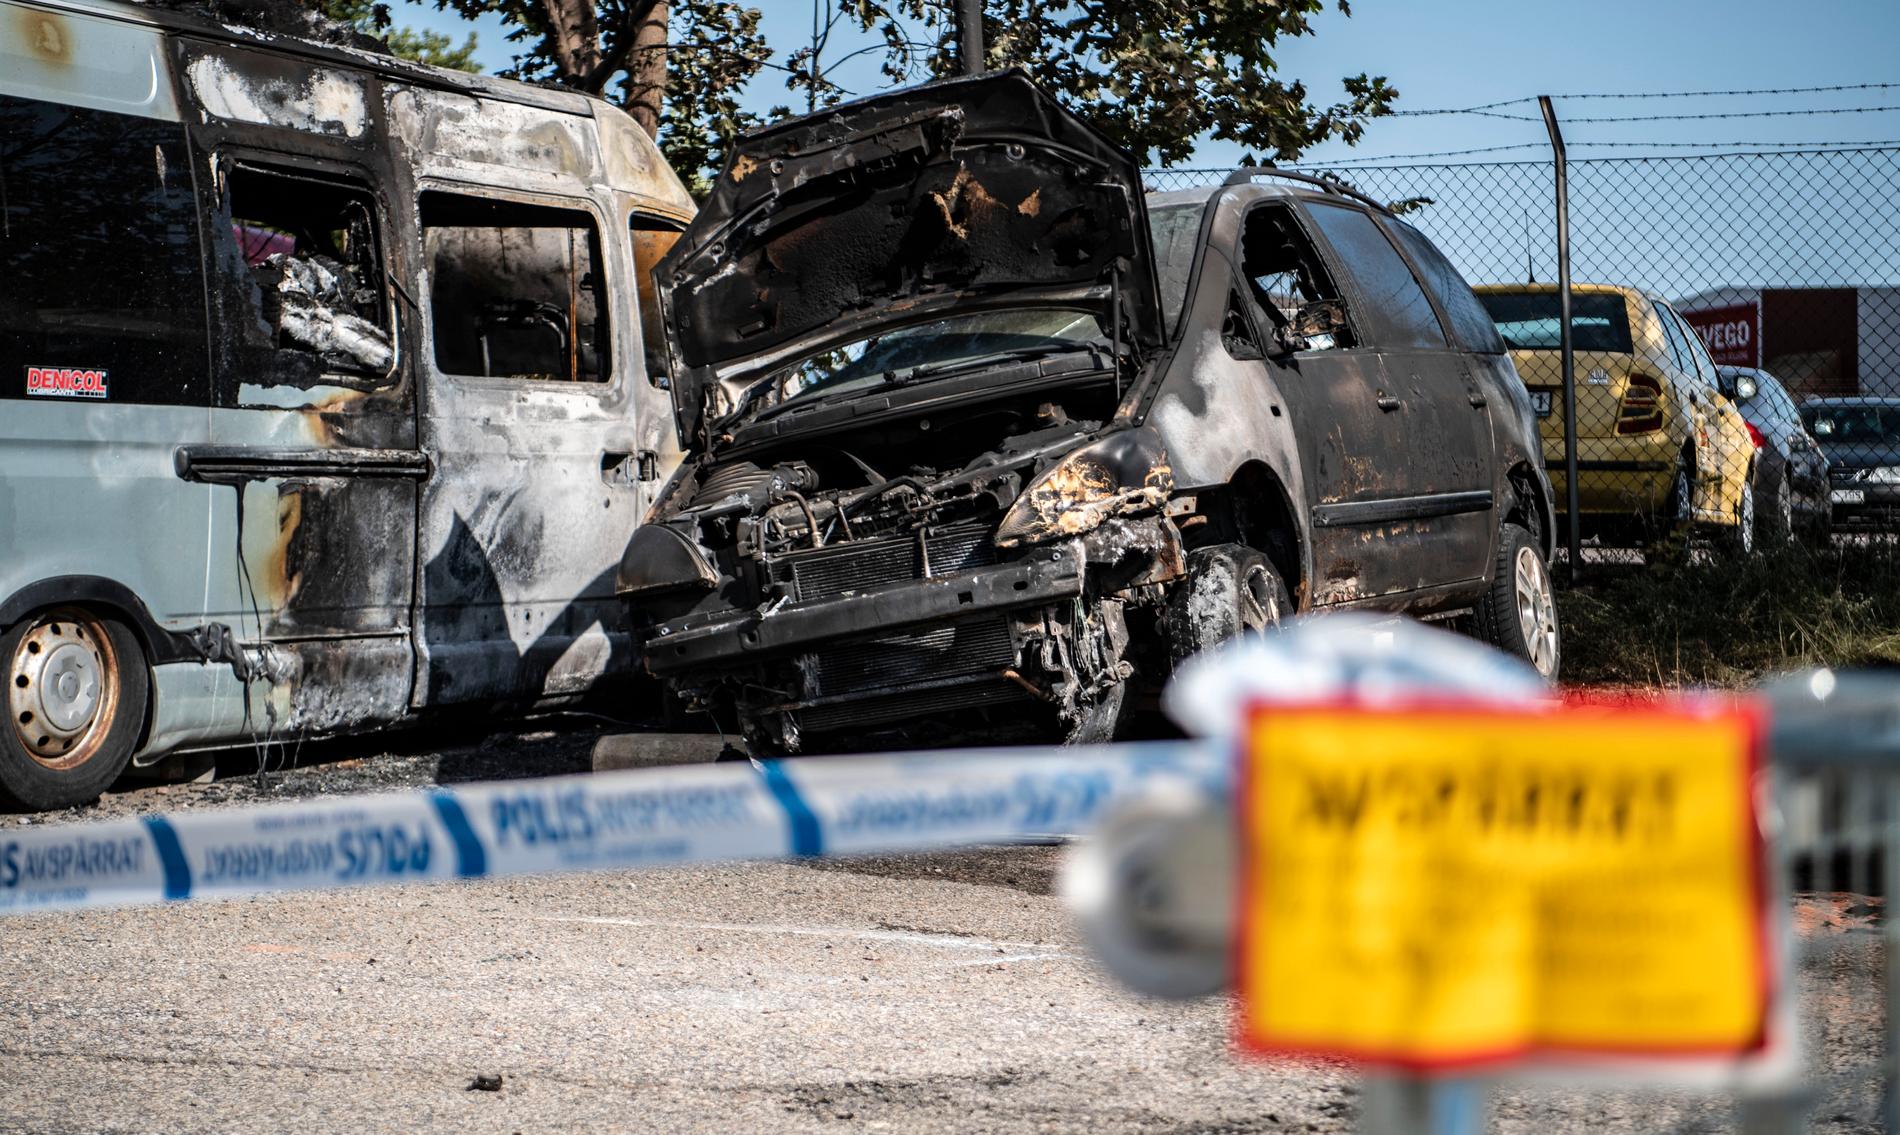 Lund i slutet av juni: Polisavspärrningar kring två utbrända bilar på Gustavshemsgatan i Lund efter en brand. Arkivbild.